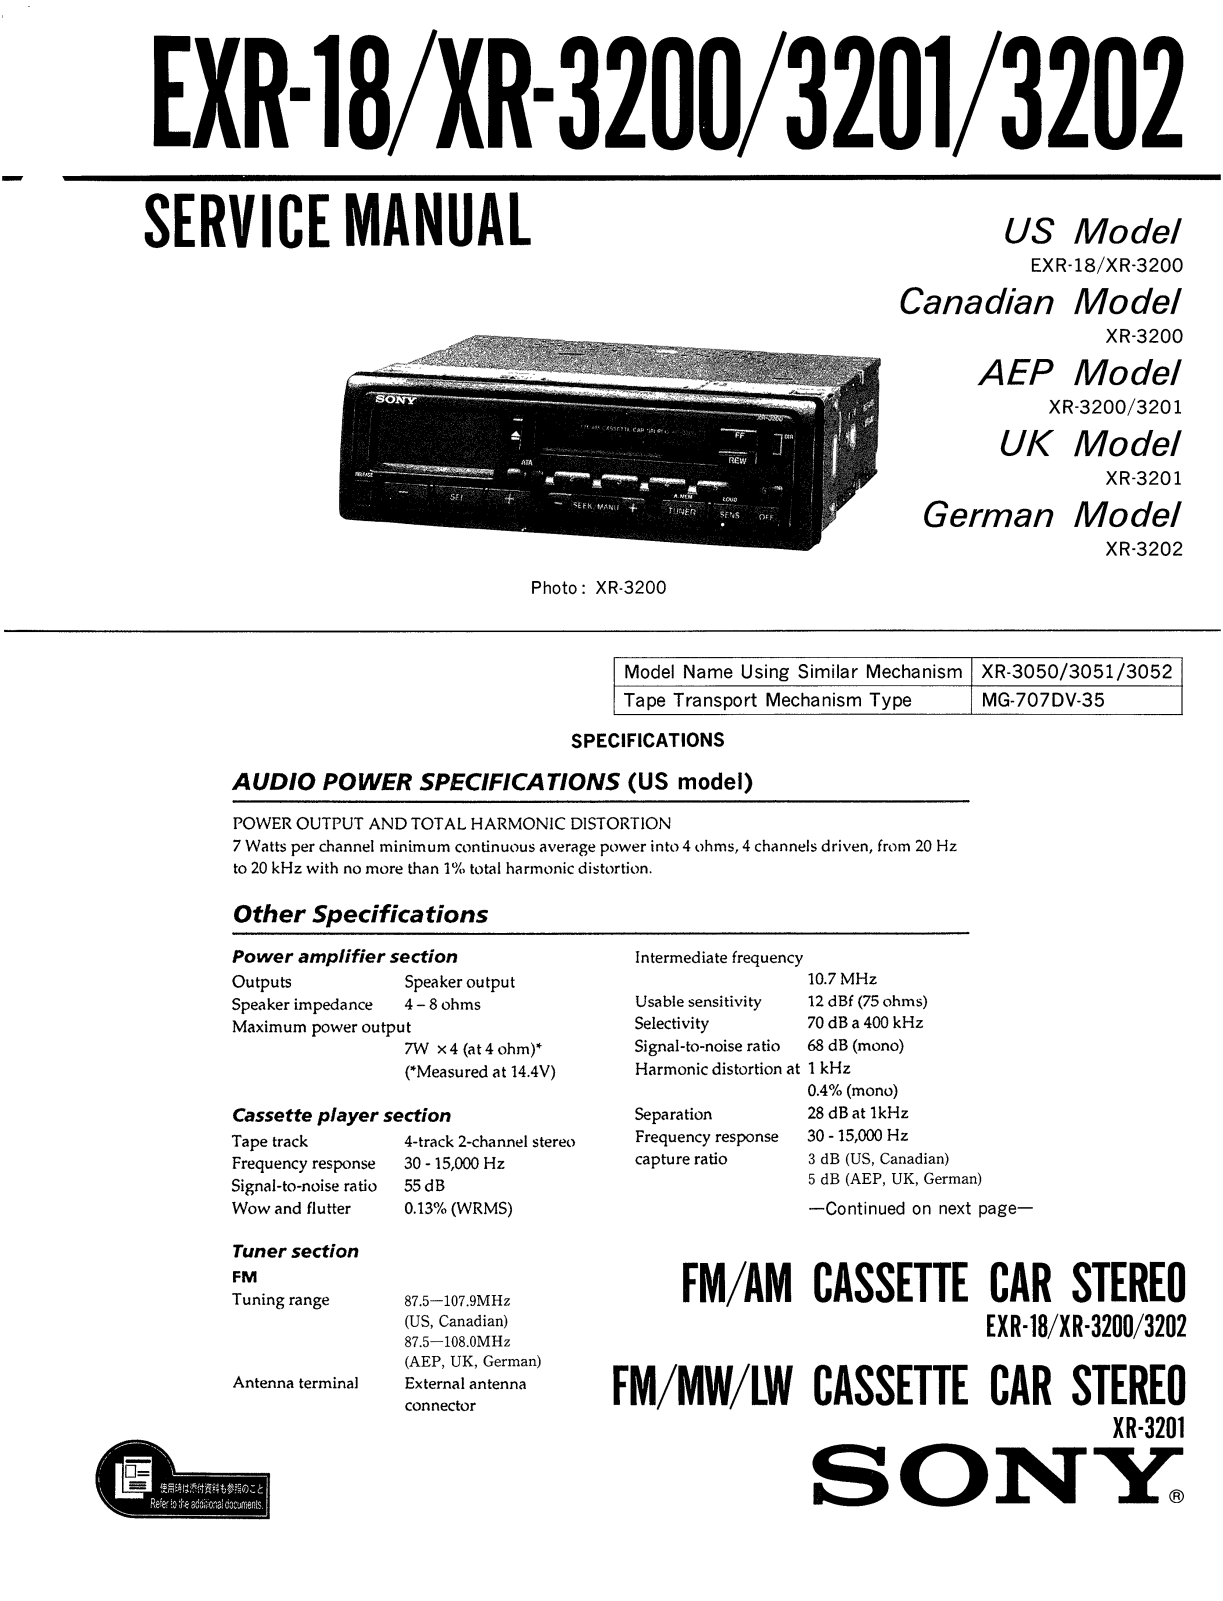 Sony XR-3200, XR-3201, XR-3202, EXR-18 Service manual